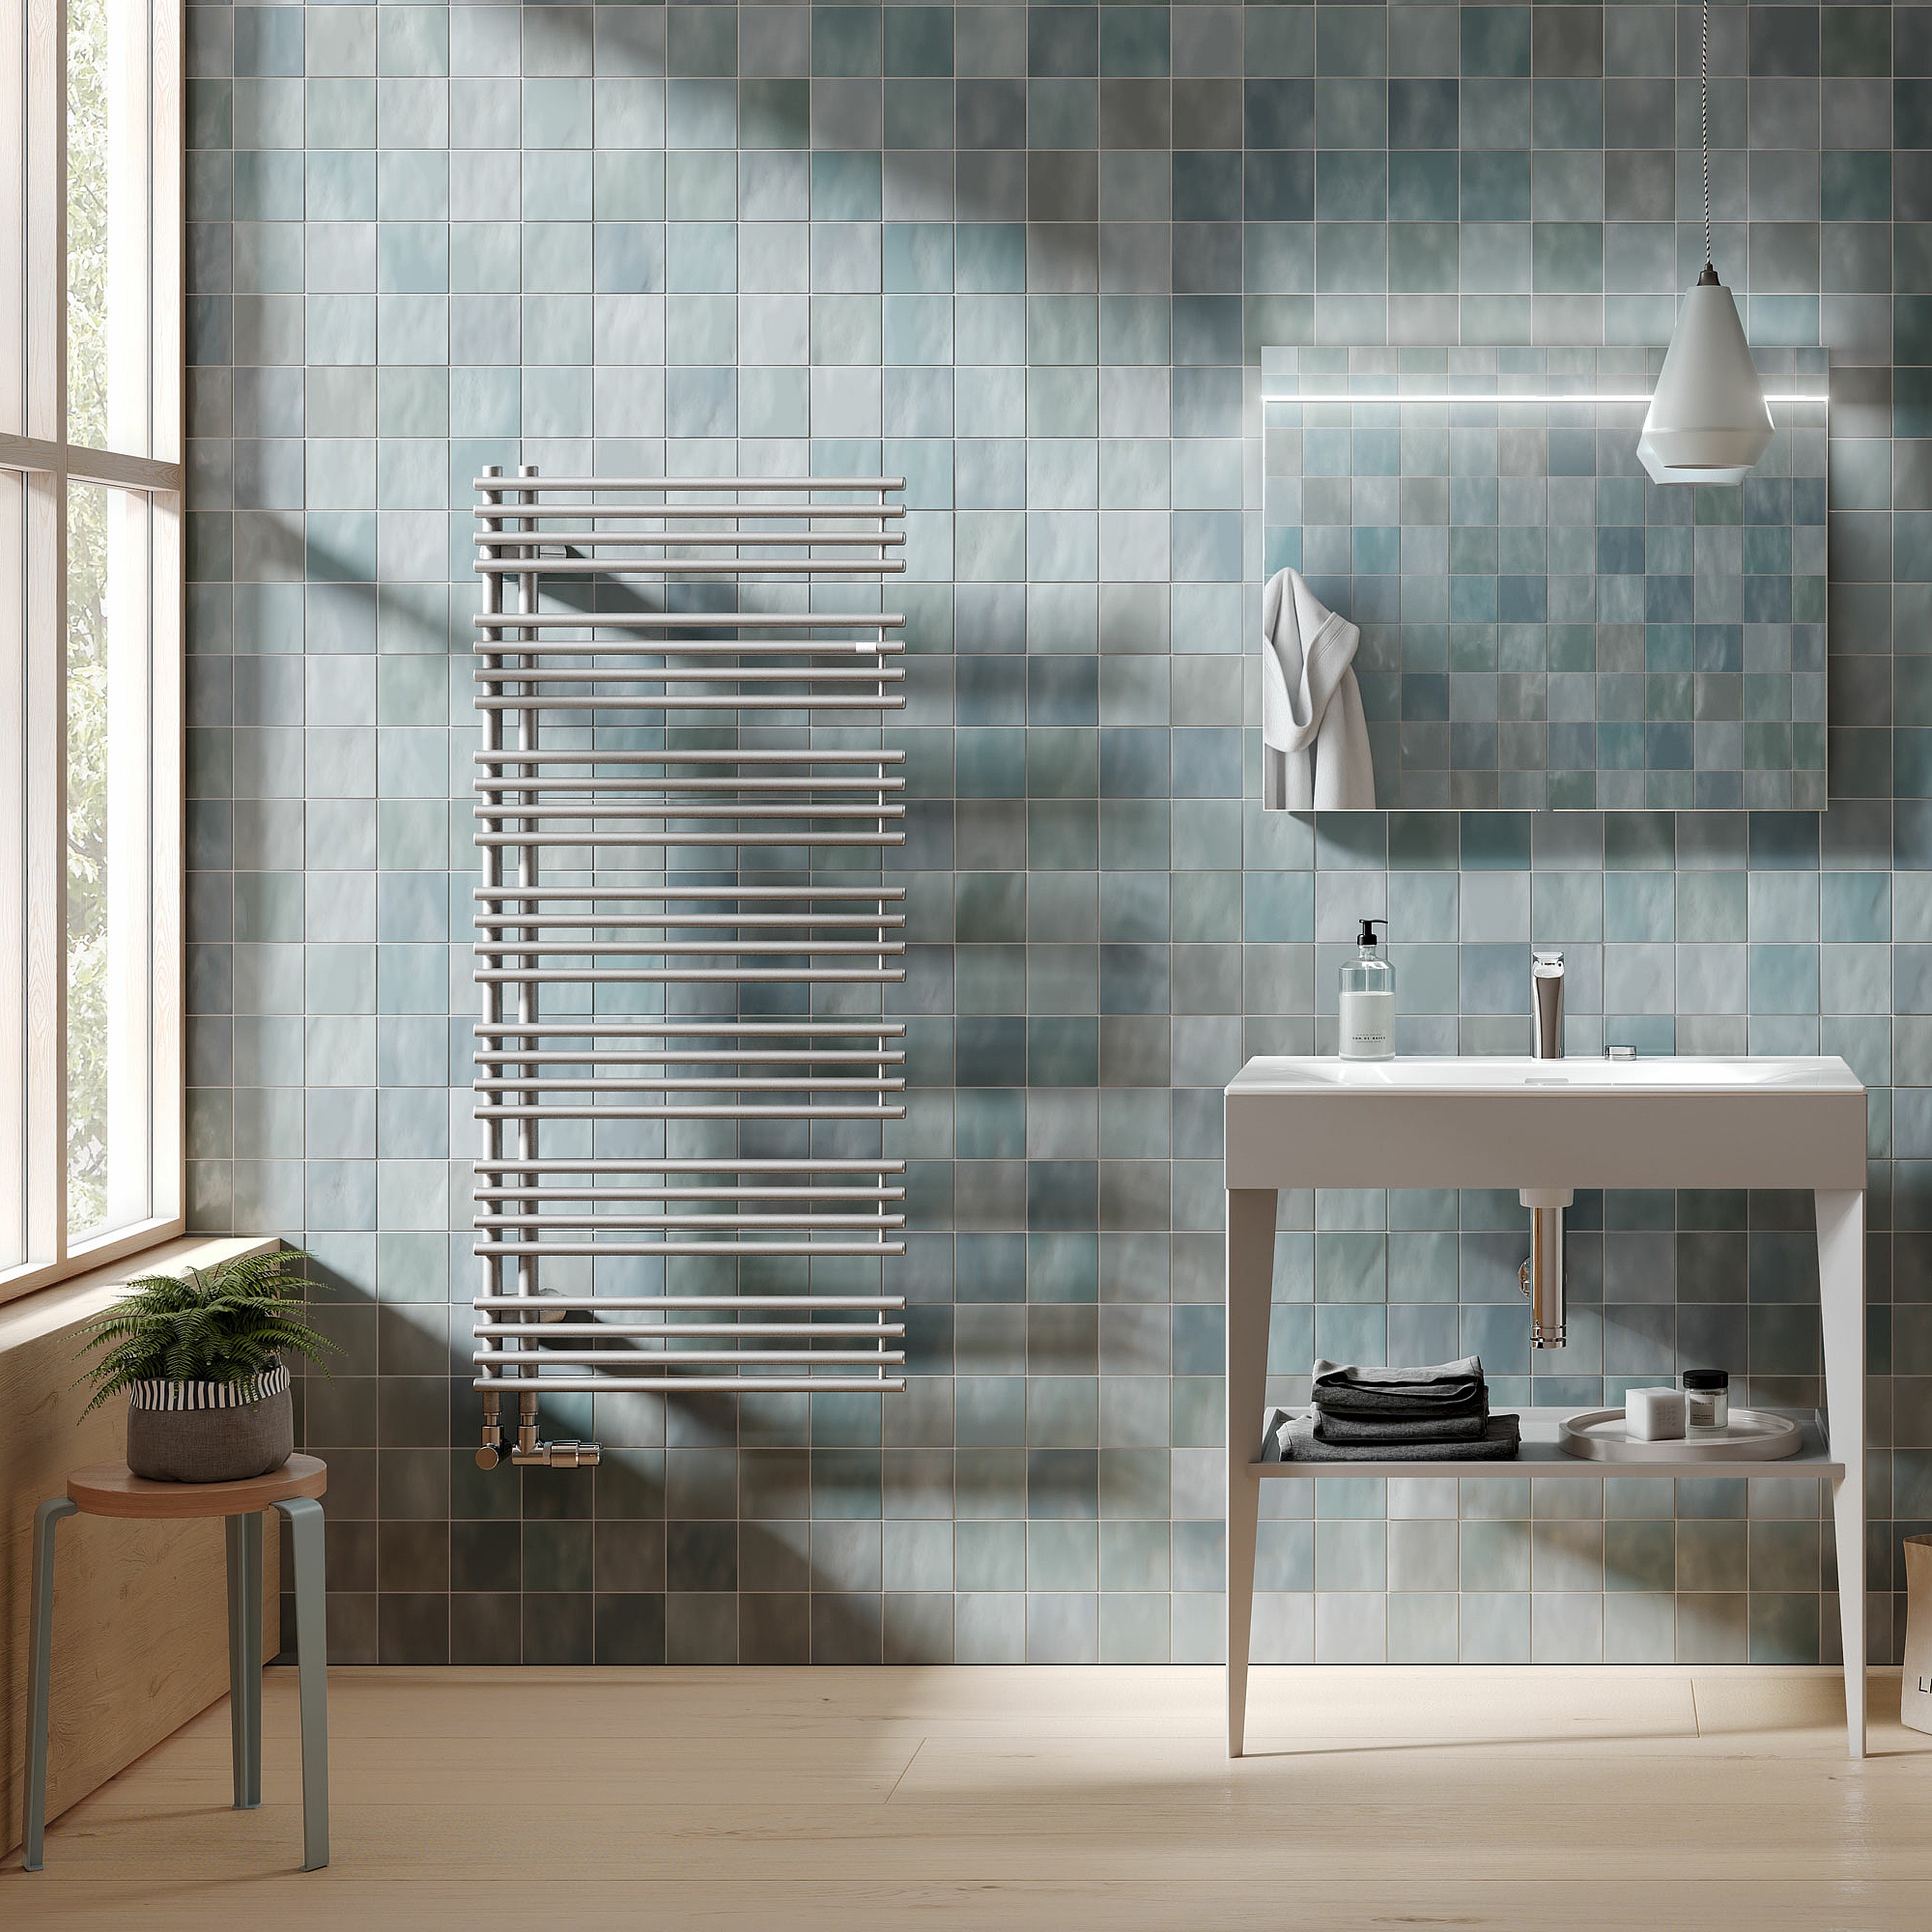 Radiatore da bagno e di design Kermi Diveo – la funzionalità incontra il comfort.